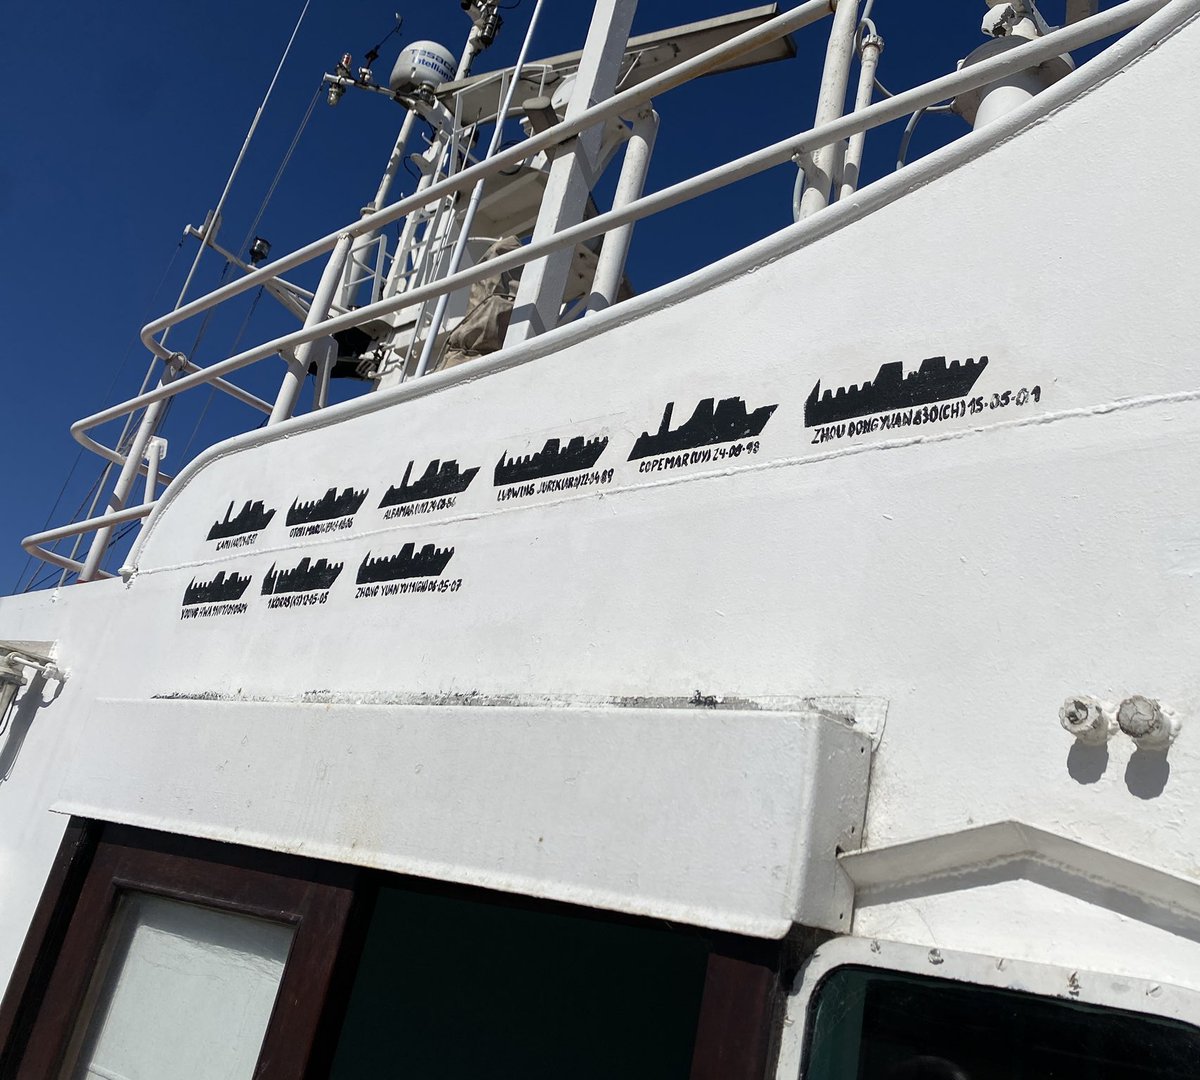 Un barco de prefectura naval argentina tiene marcado todos los pesqueros chinos que detuvo jsjs